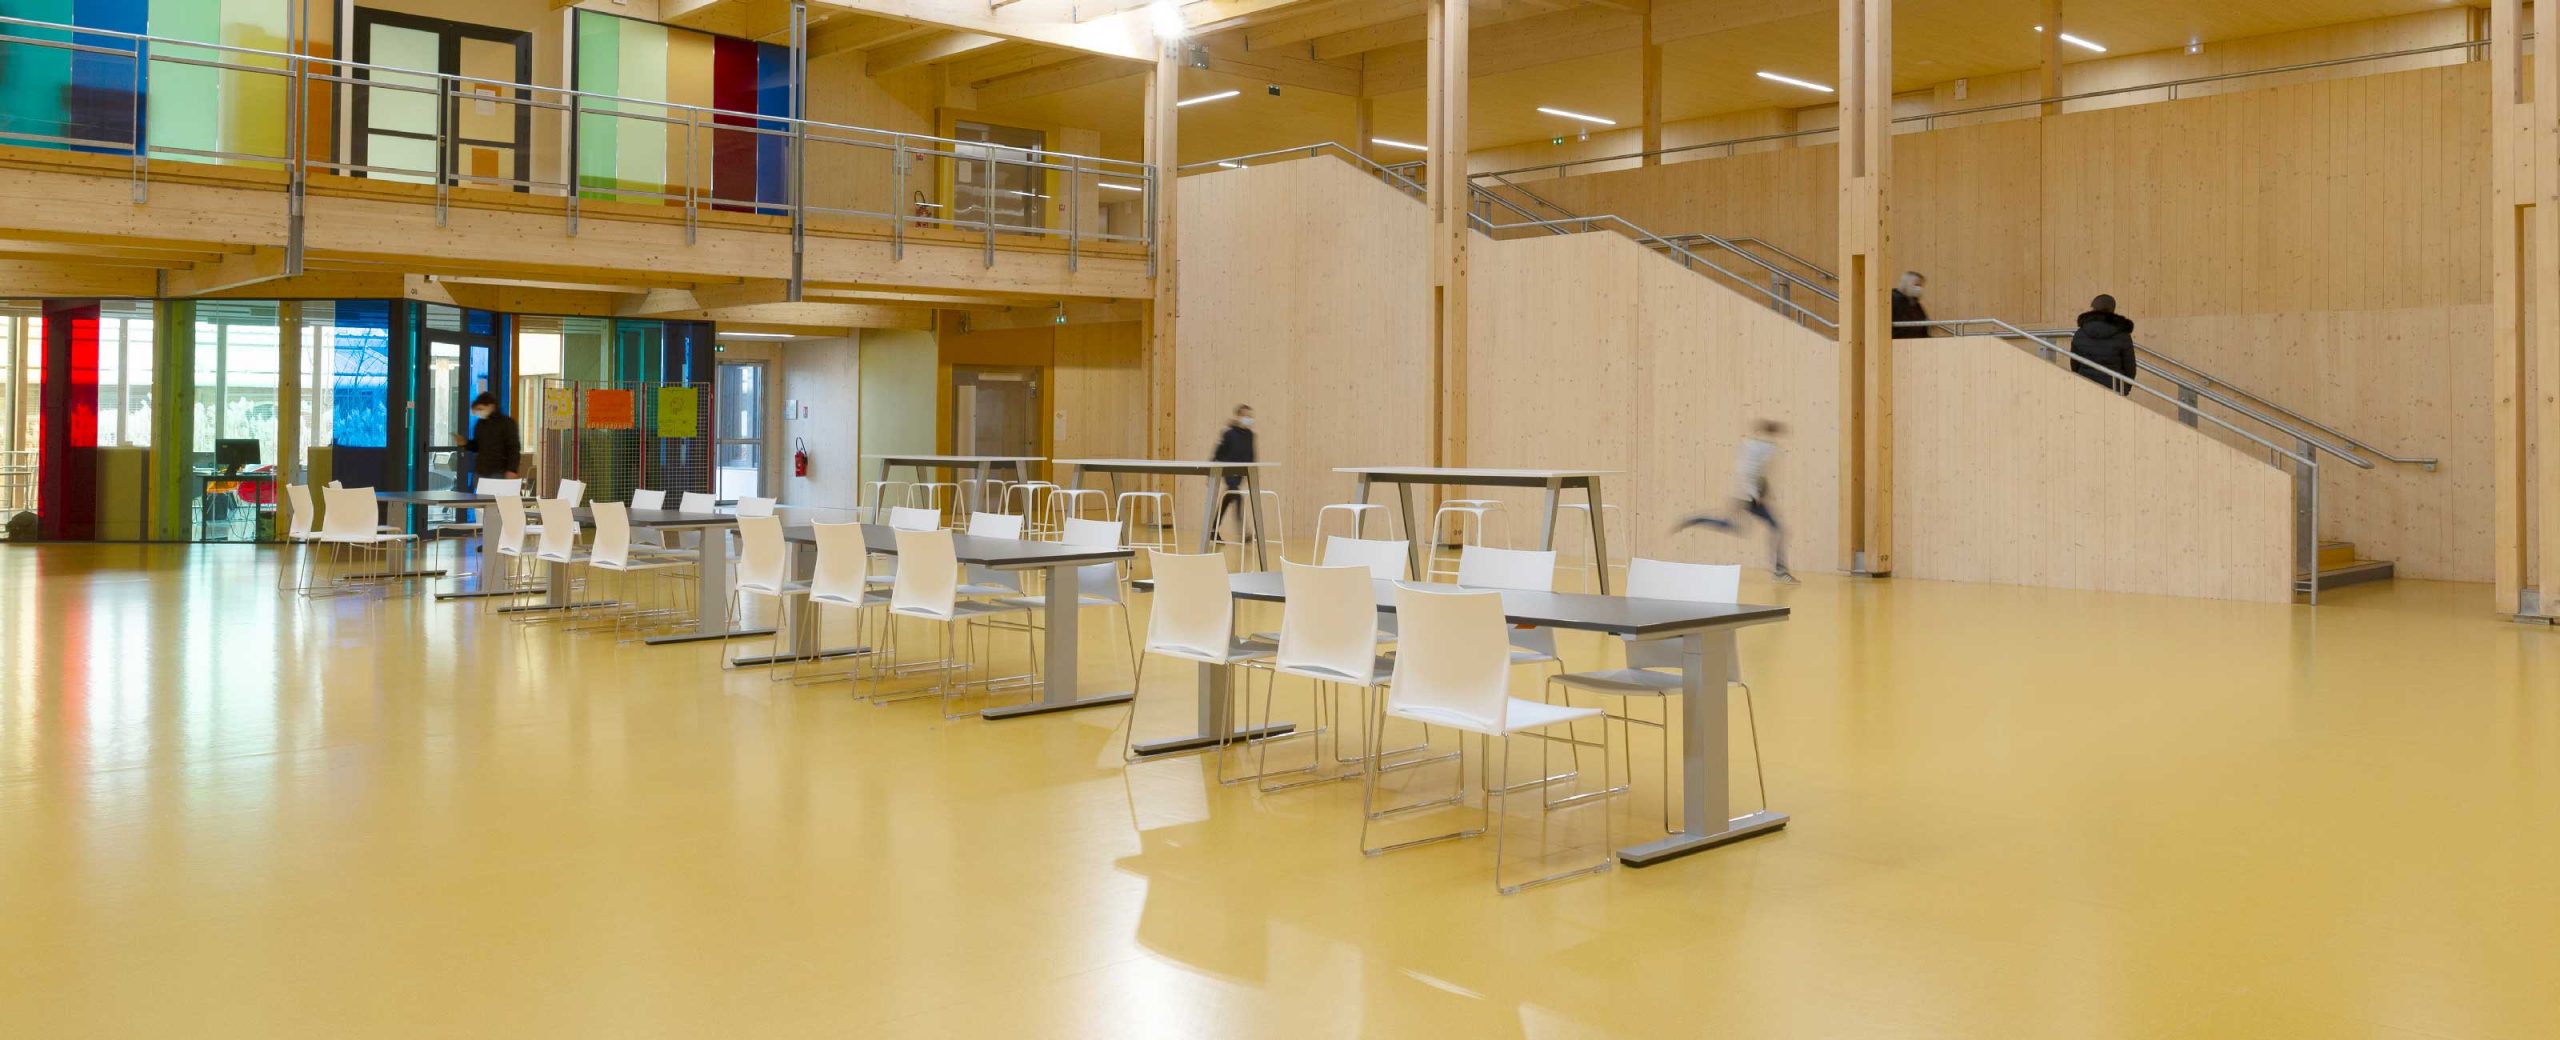 Pavimenti design moderno - Pavimento per scuole - Elsa Triolet College